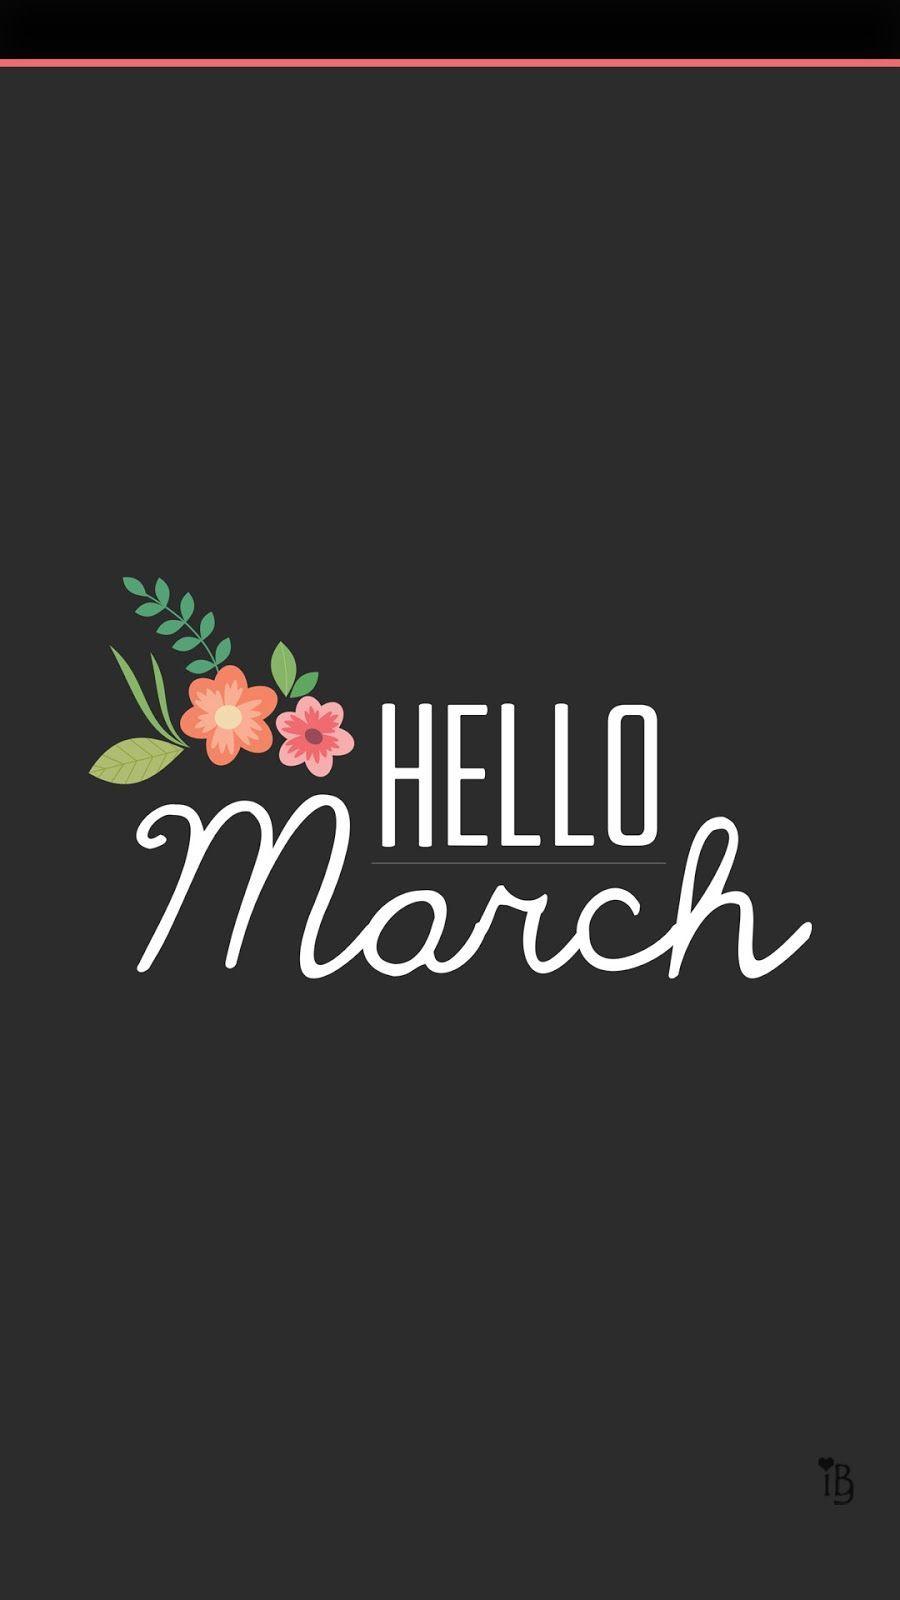 Download Starry March 2022 Calendar Wallpaper  Wallpaperscom